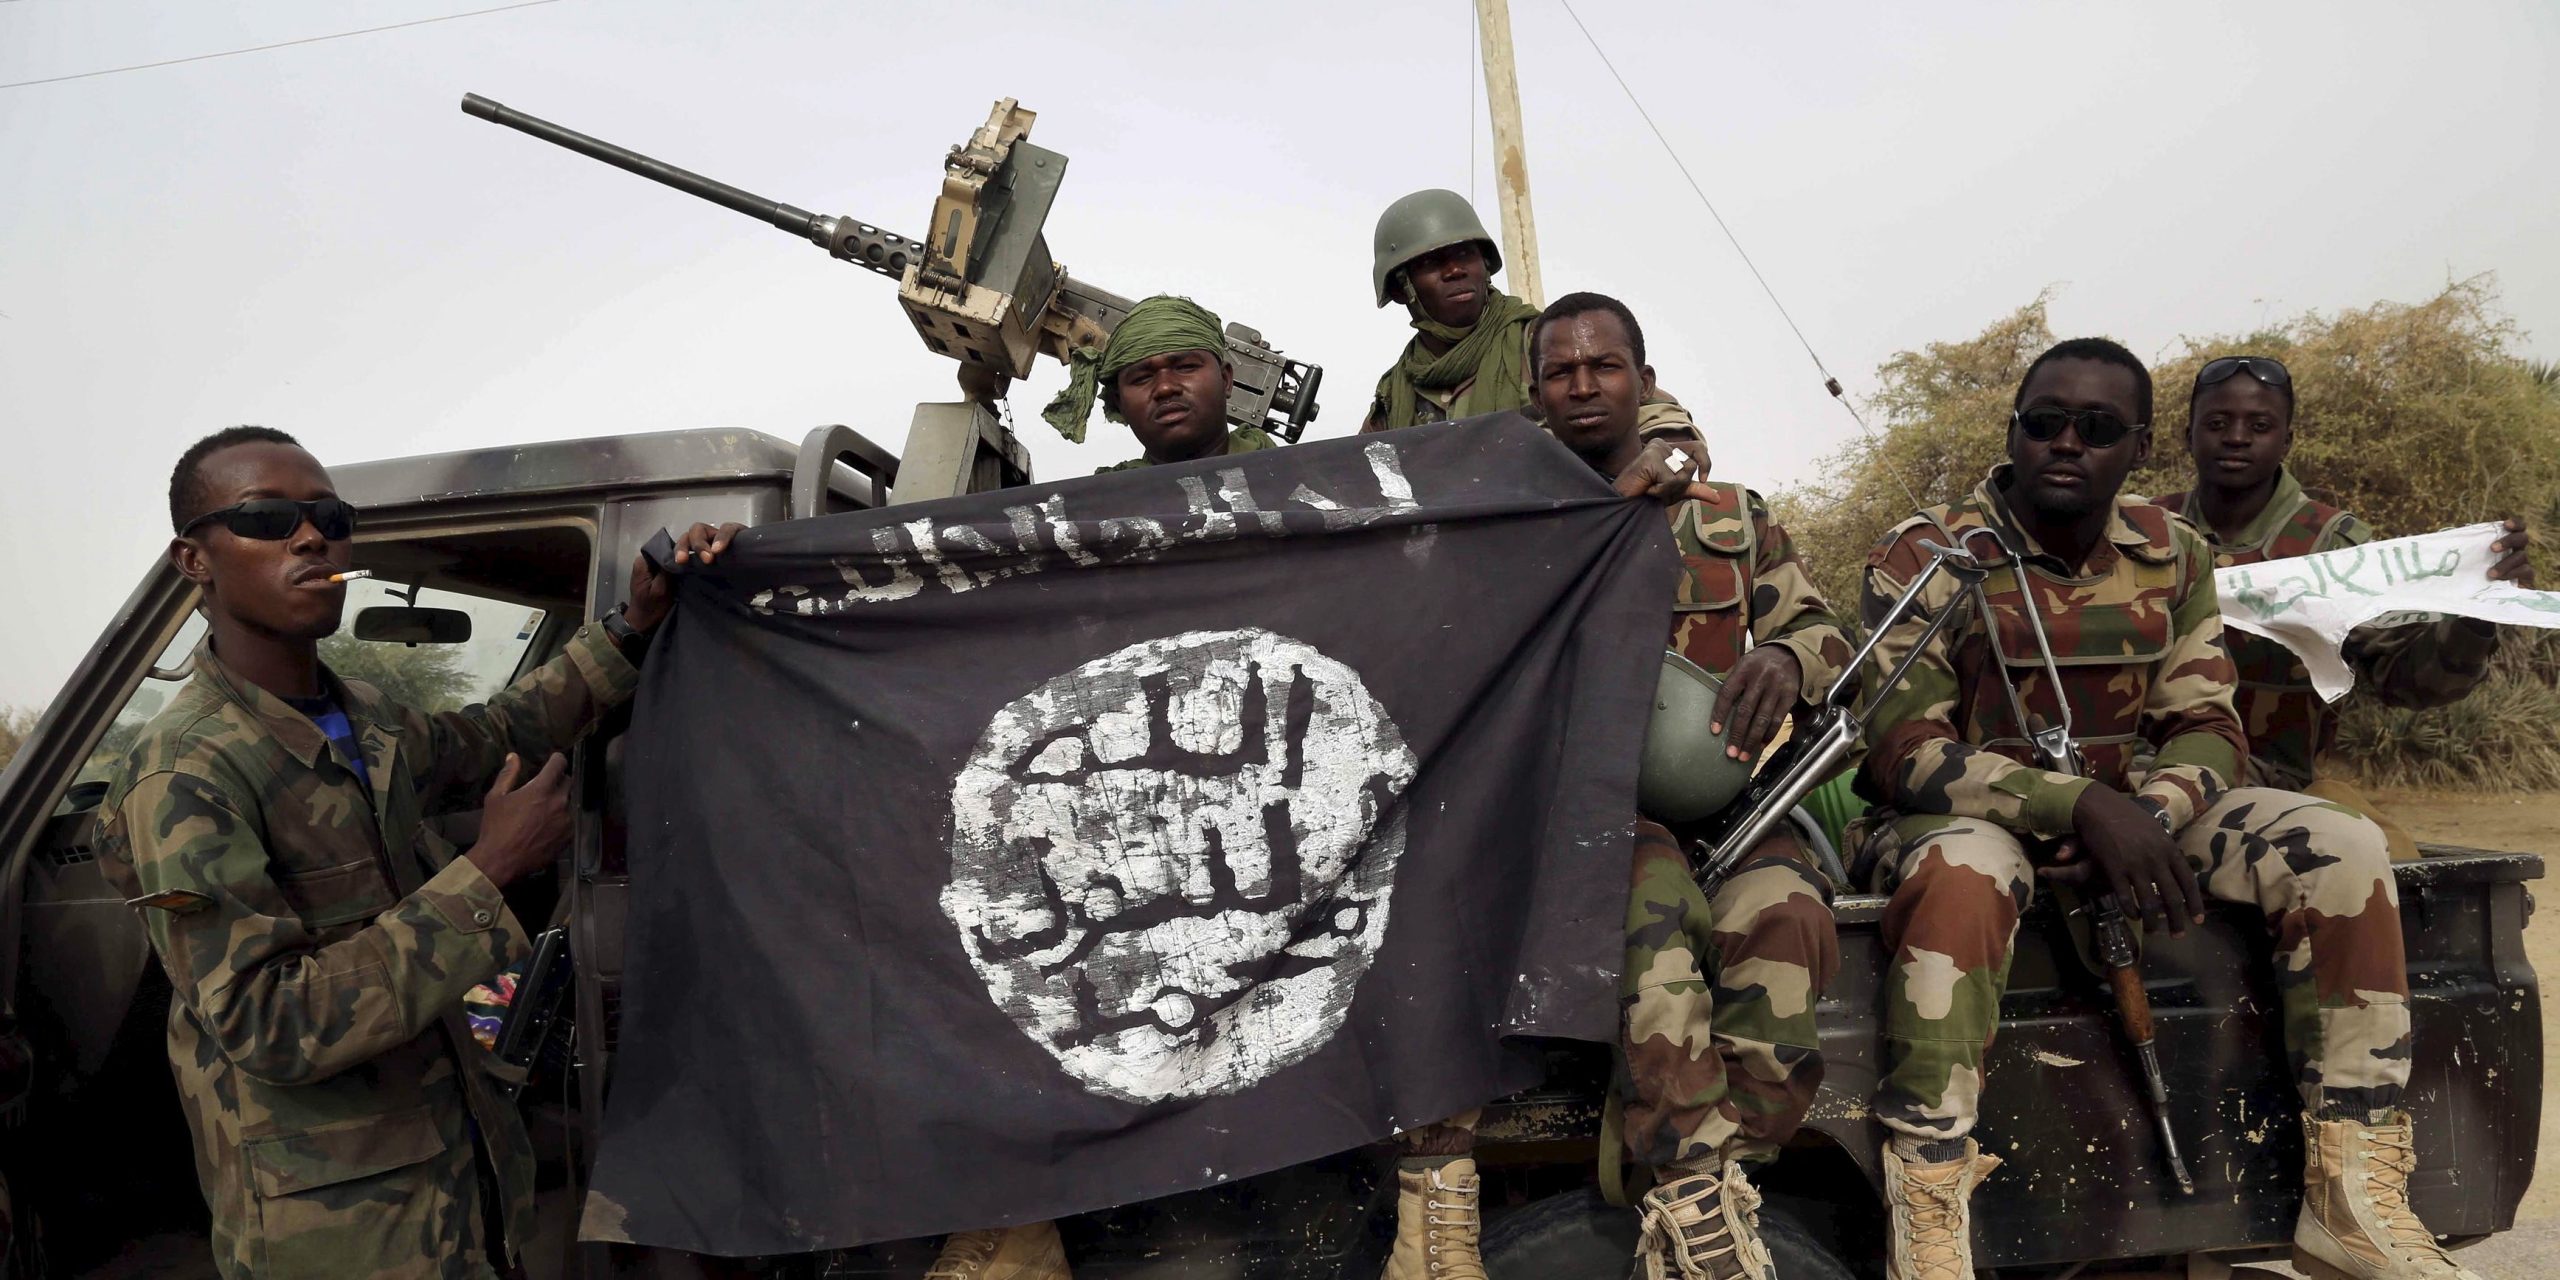 Νιγηρία: Τρόμος σε πόλη από εισβολή εξτρεμιστών μουσουλμάνων